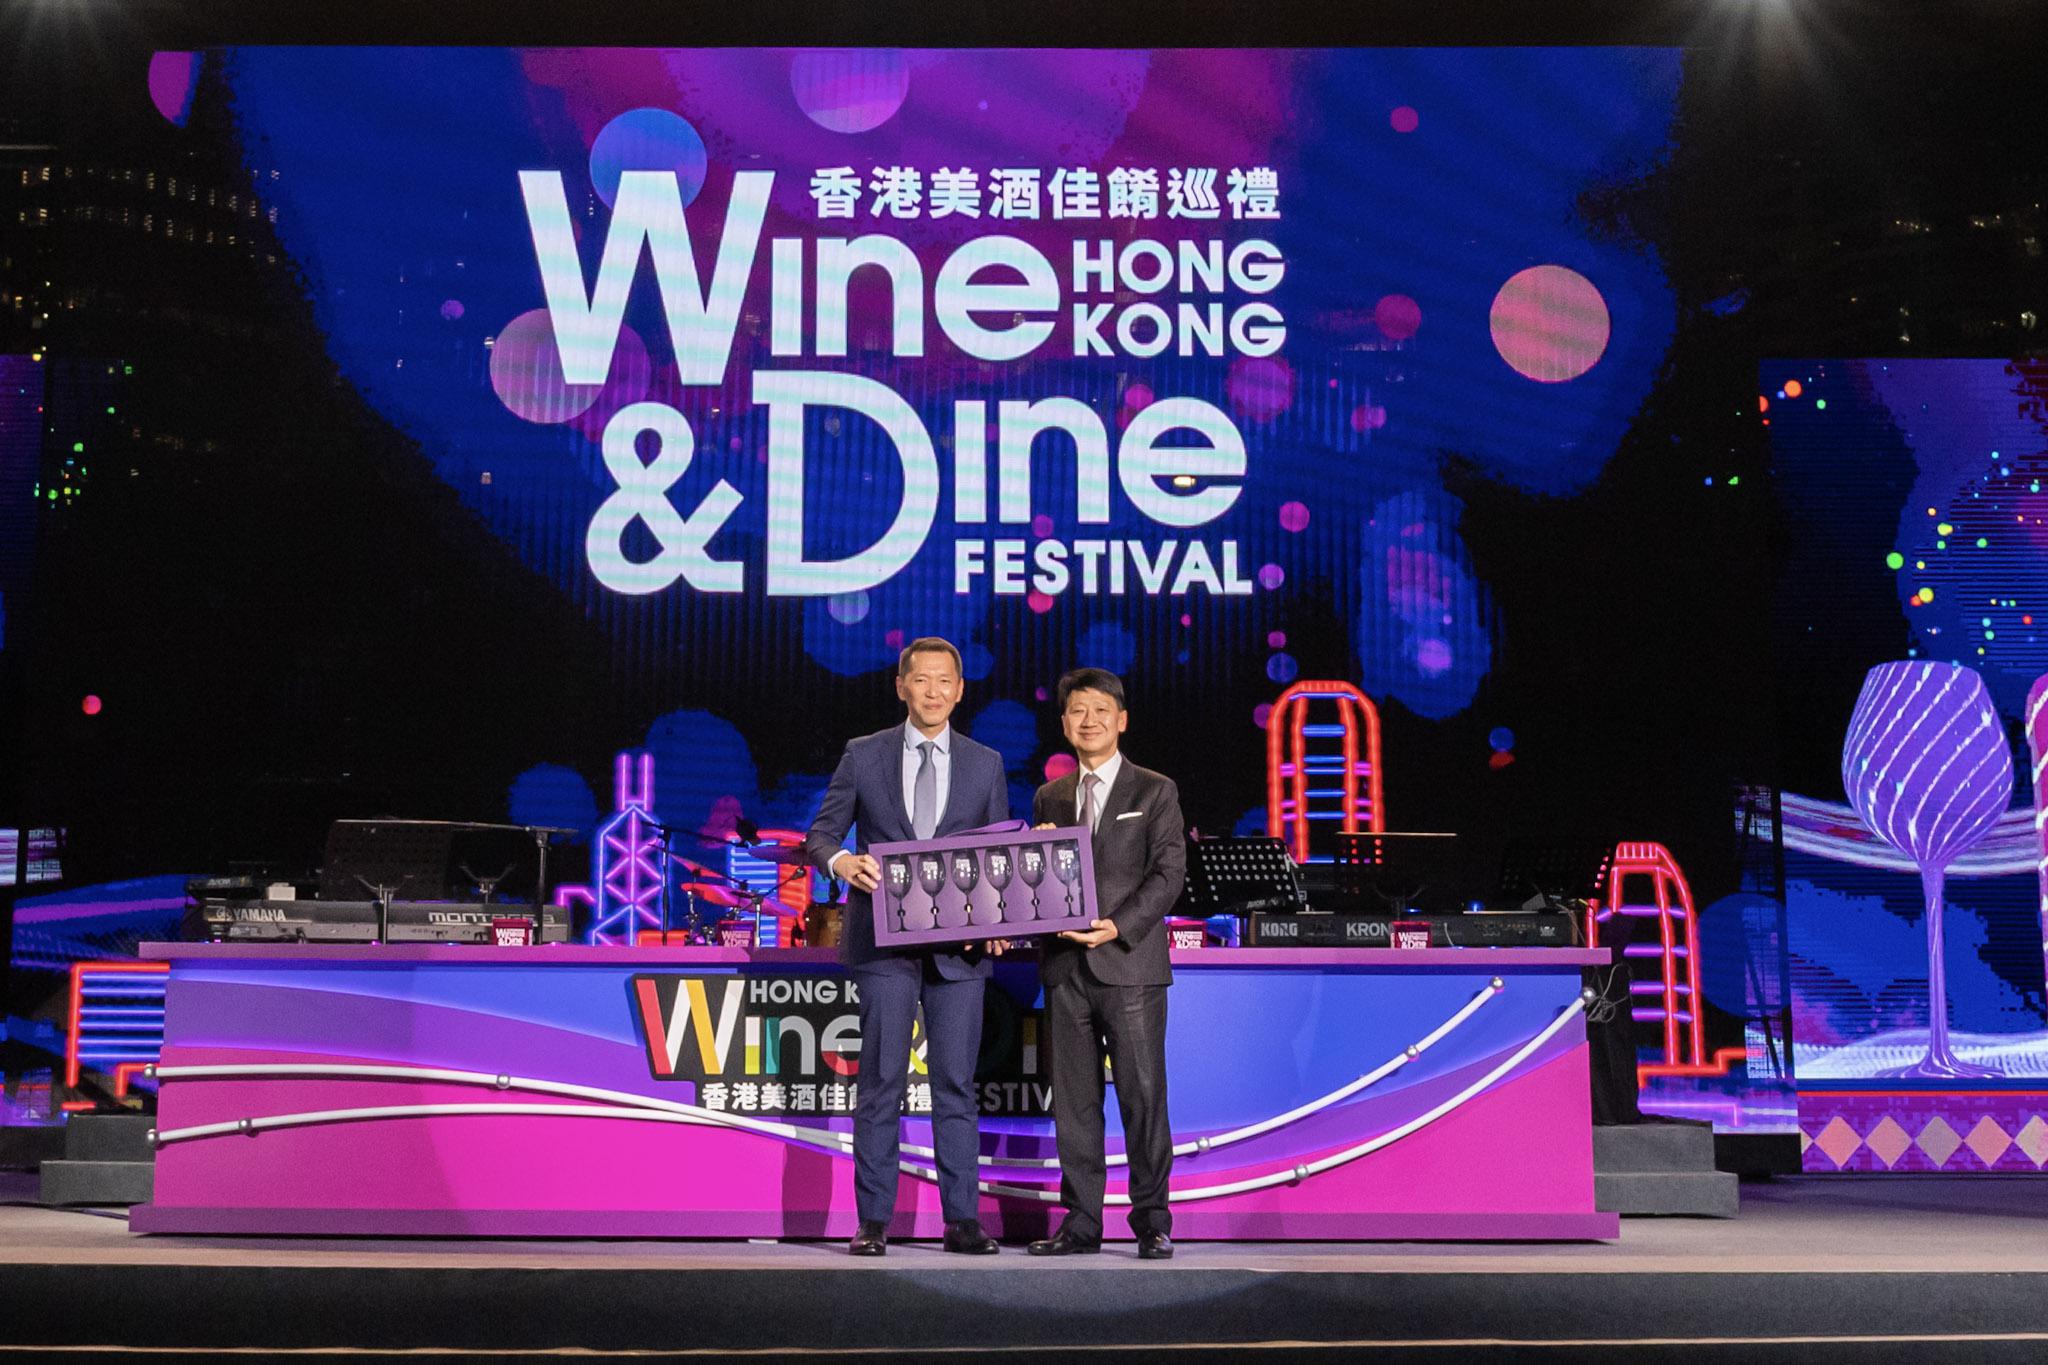 万通保险行政总裁叶嘉年先生(左)出席「香港美酒佳肴巡礼」开幕典礼，并接受主礼嘉宾香港旅游发展局主席彭耀佳博士致送纪念品。